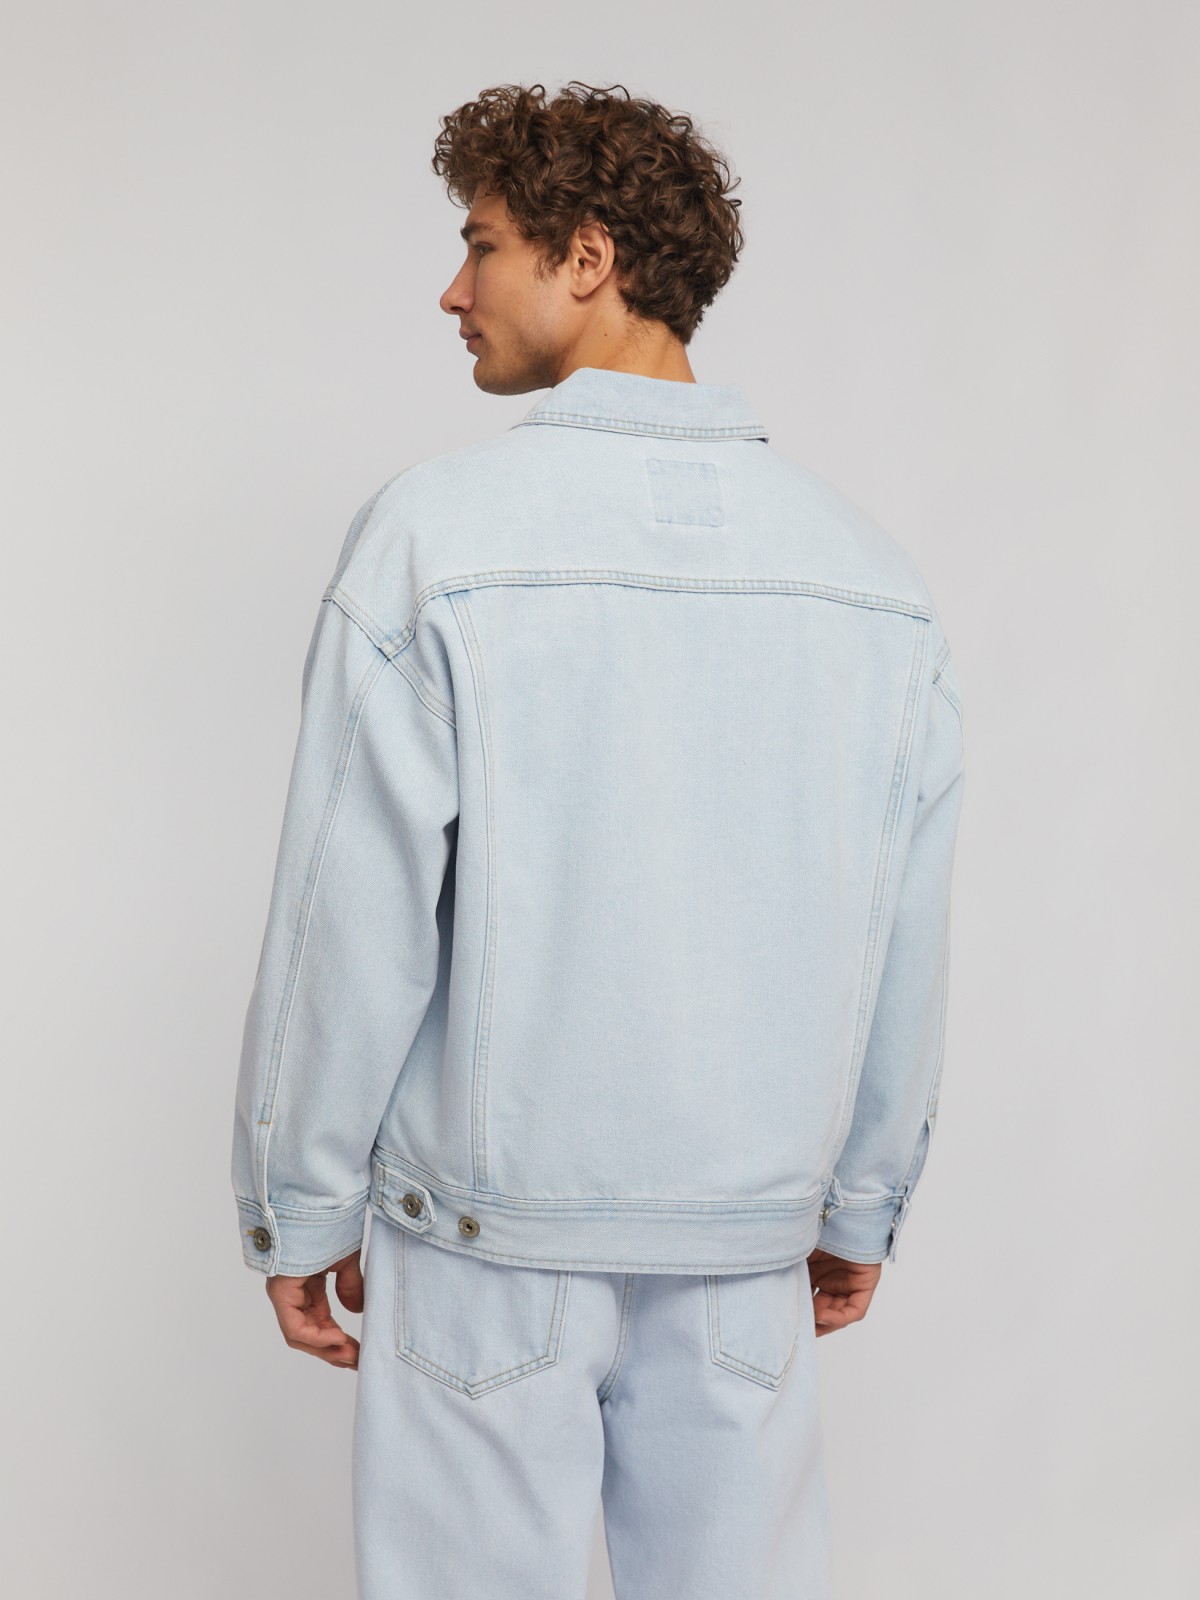 Джинсовая куртка-рубашка свободного фасона zolla 214225D1S031, цвет голубой, размер L - фото 6